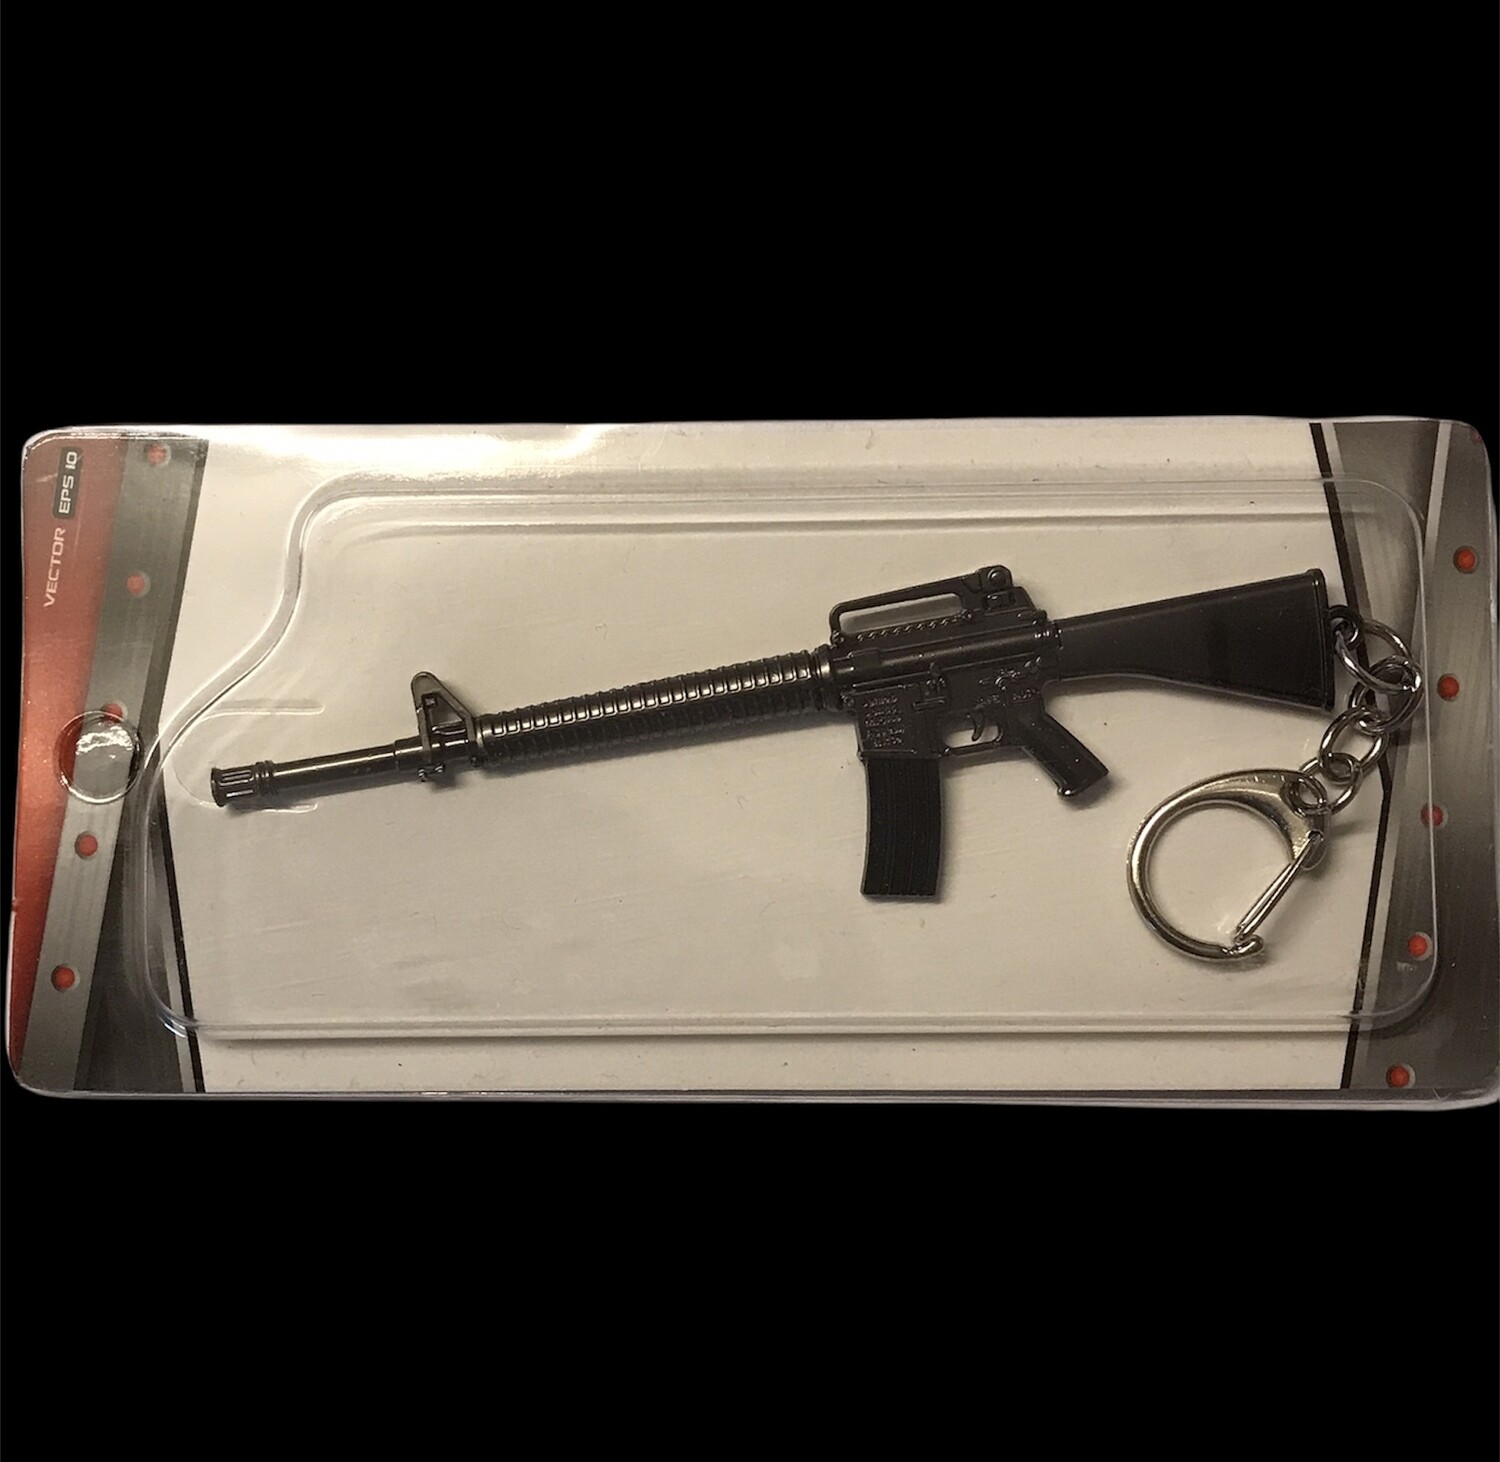 Machine Gun - Metal gun keychain